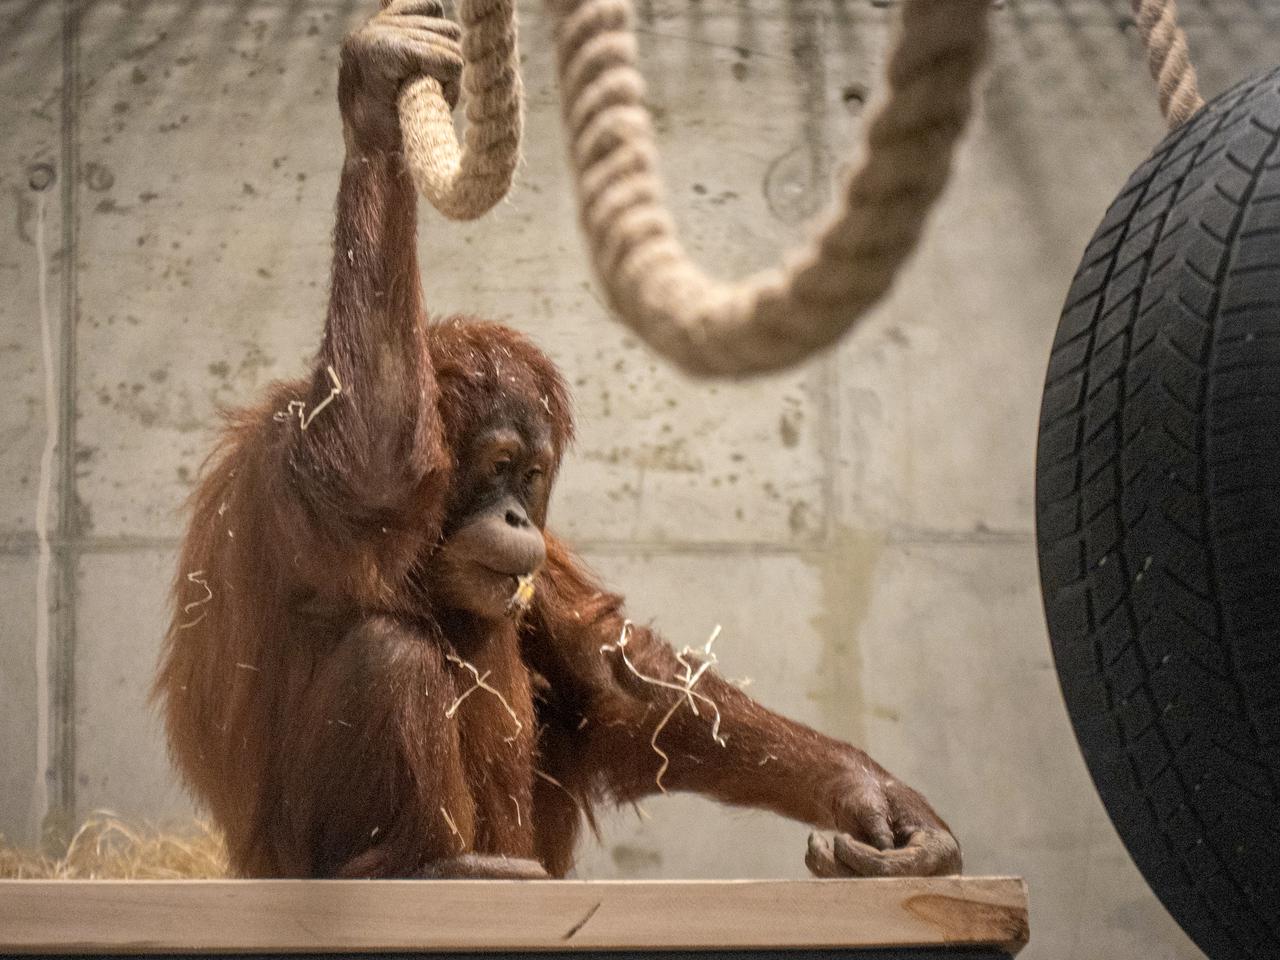 Szok! Orangutan został lekarzem. Naprawdę wyleczył chorobę